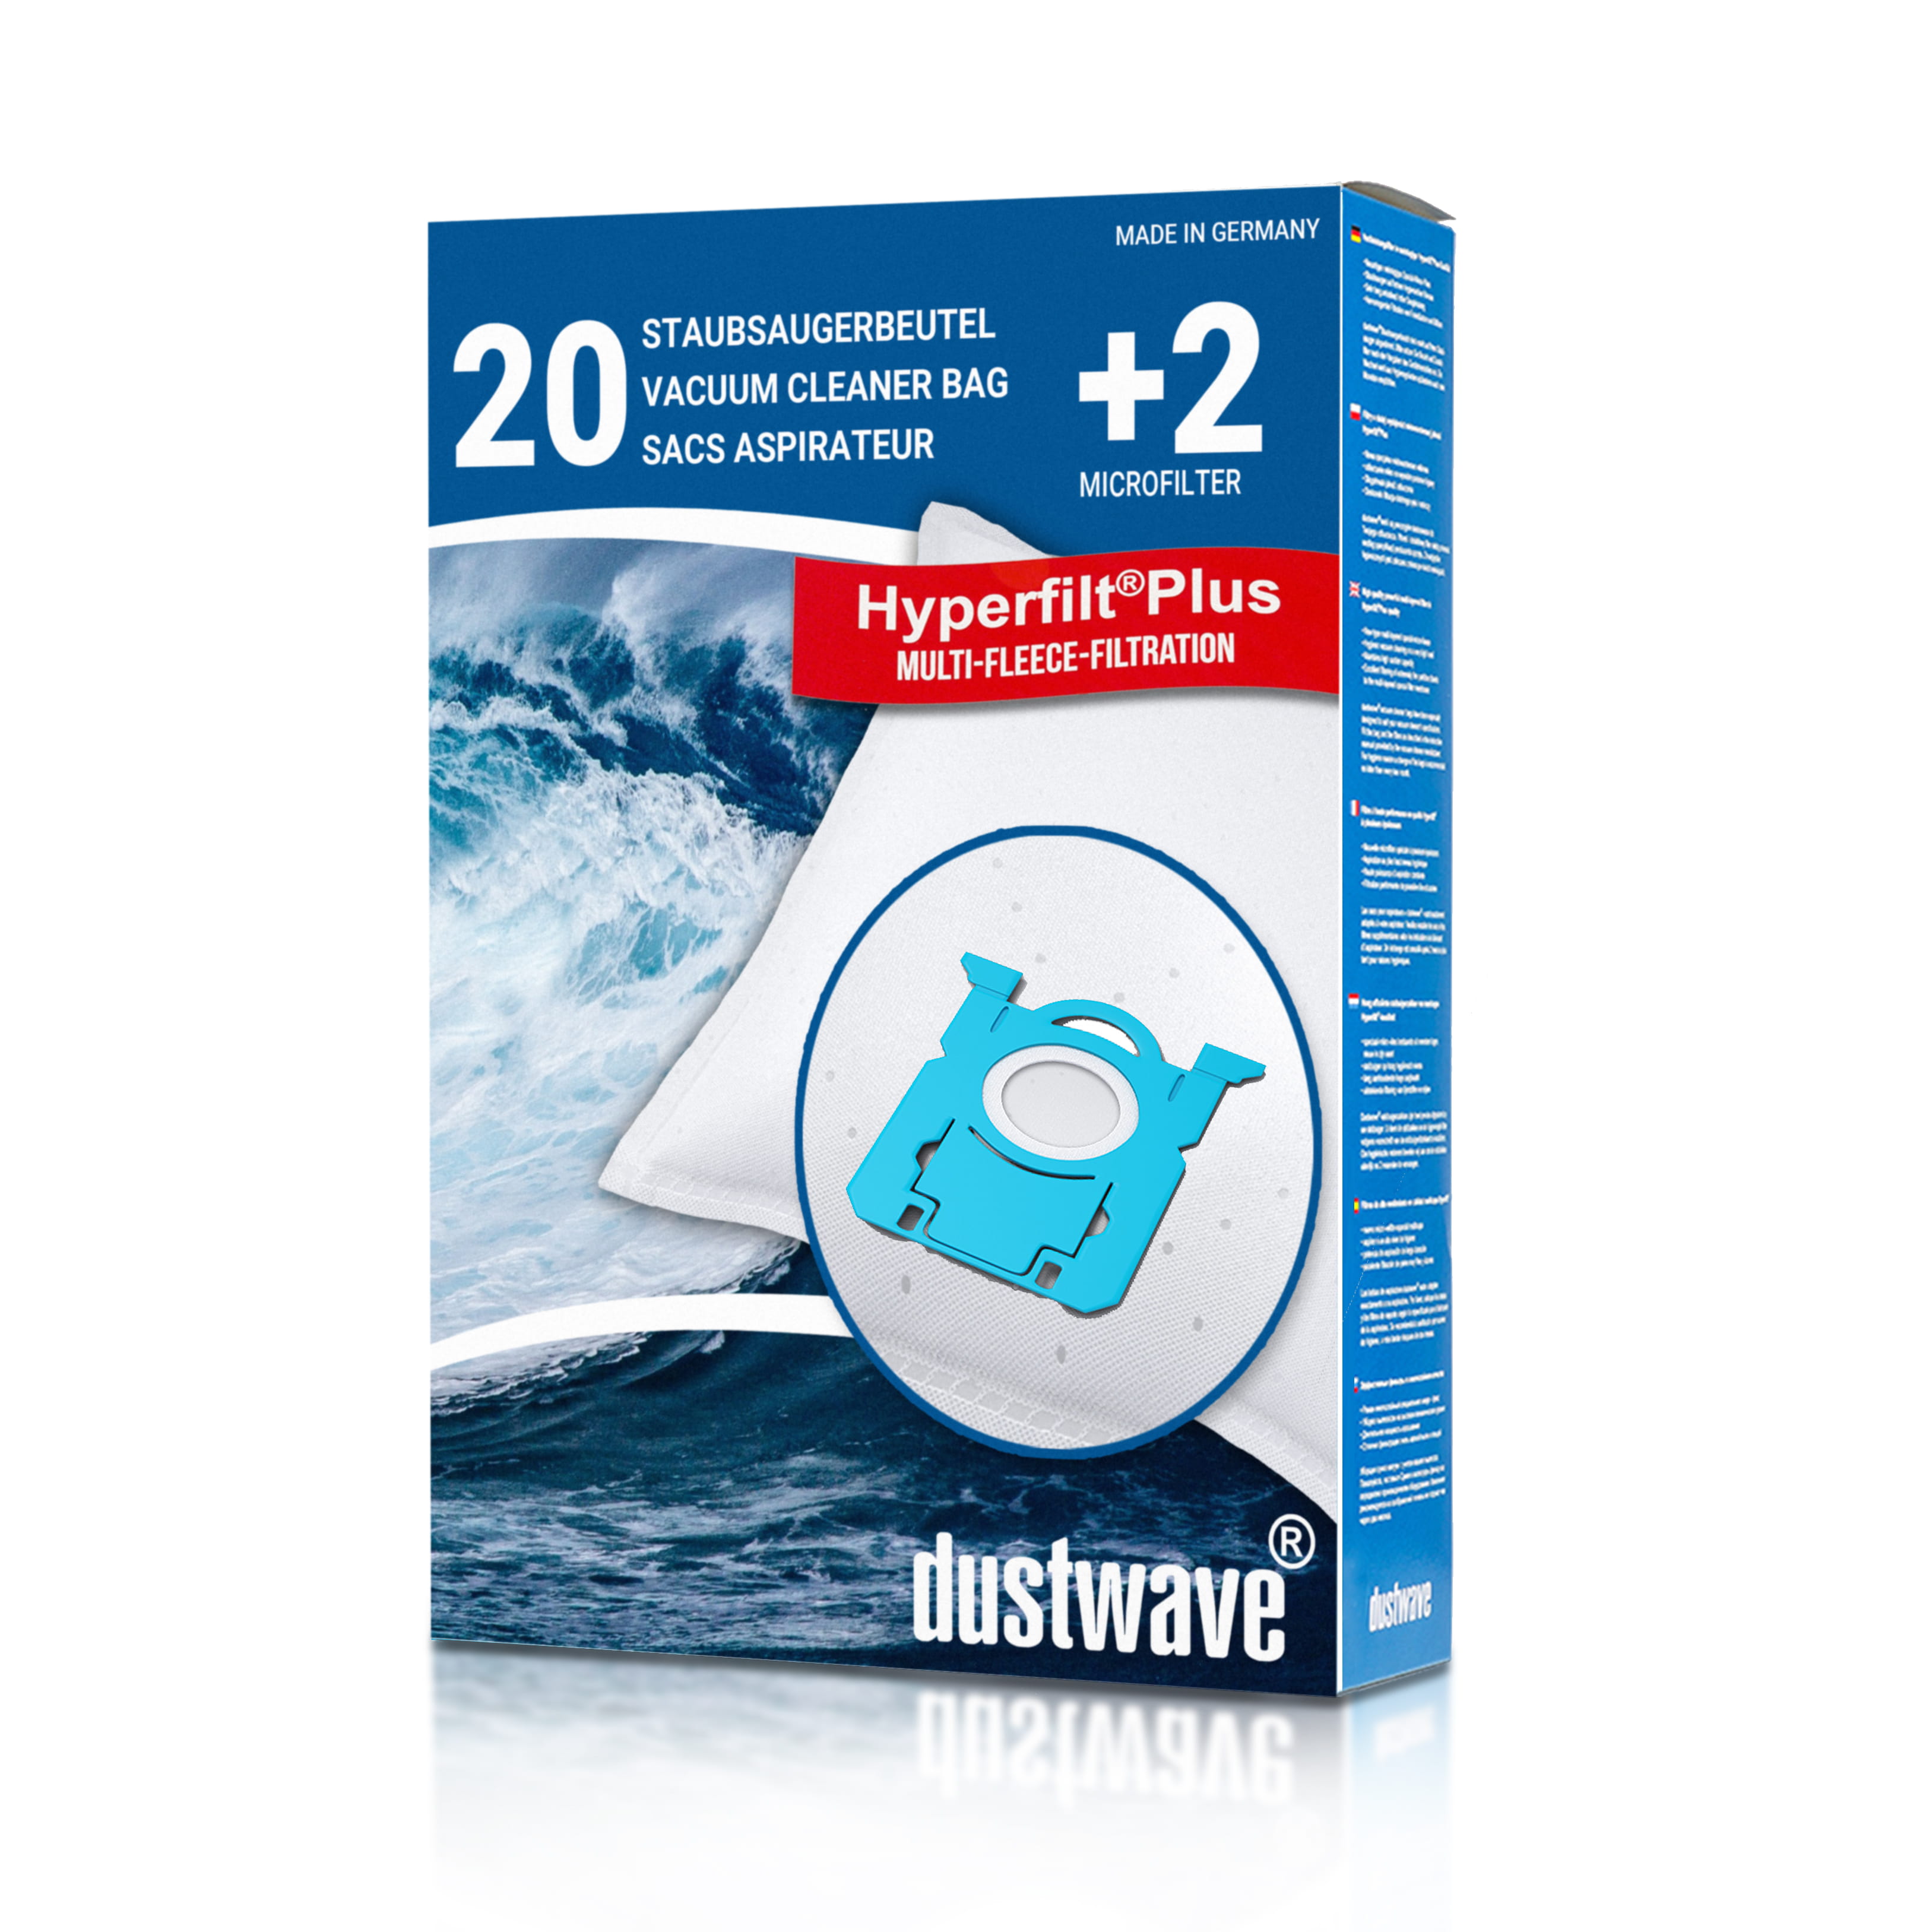 Dustwave® 20 Staubsaugerbeutel für AEG ASP 7160 / ASP 7160 Silentperformer - hocheffizient, mehrlagiges Mikrovlies mit Hygieneverschluss - Made in Germany